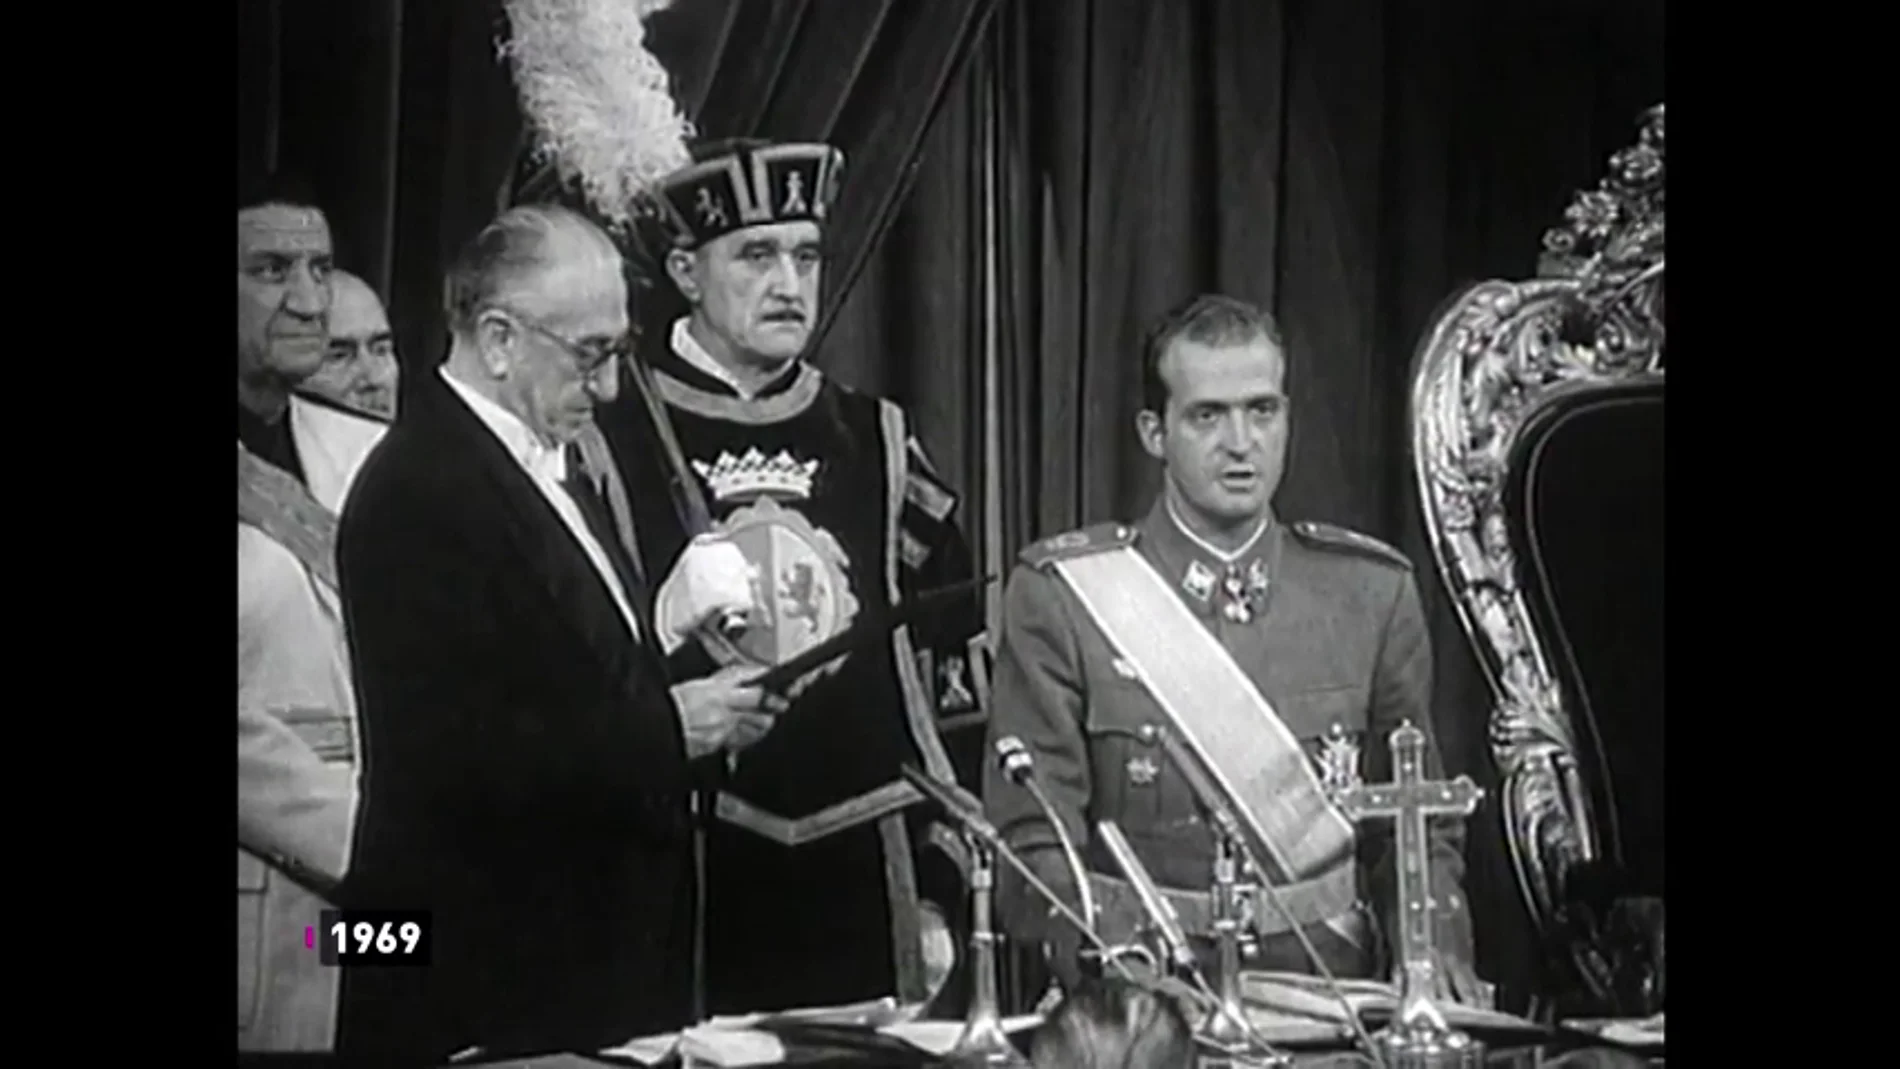 El nombramiento de Juan Carlos como príncipe: "Juro fidelidad a los principios del Movimiento Nacional"